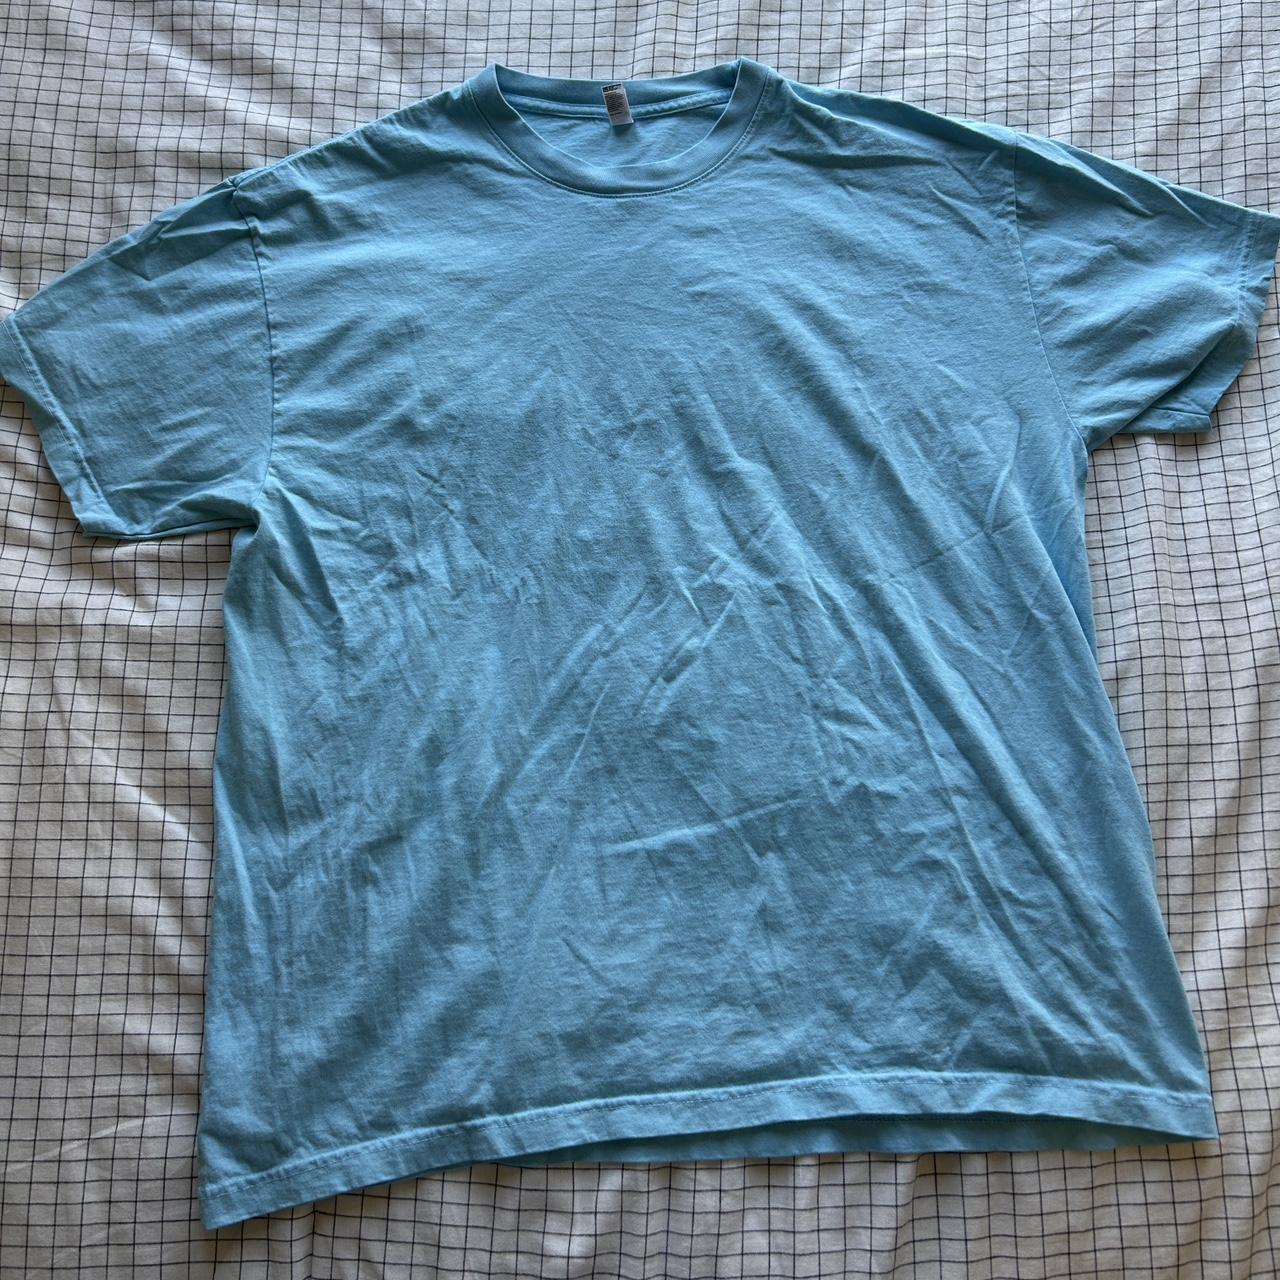 LA Apparel light blue XL shirt Never worn, brand new - Depop